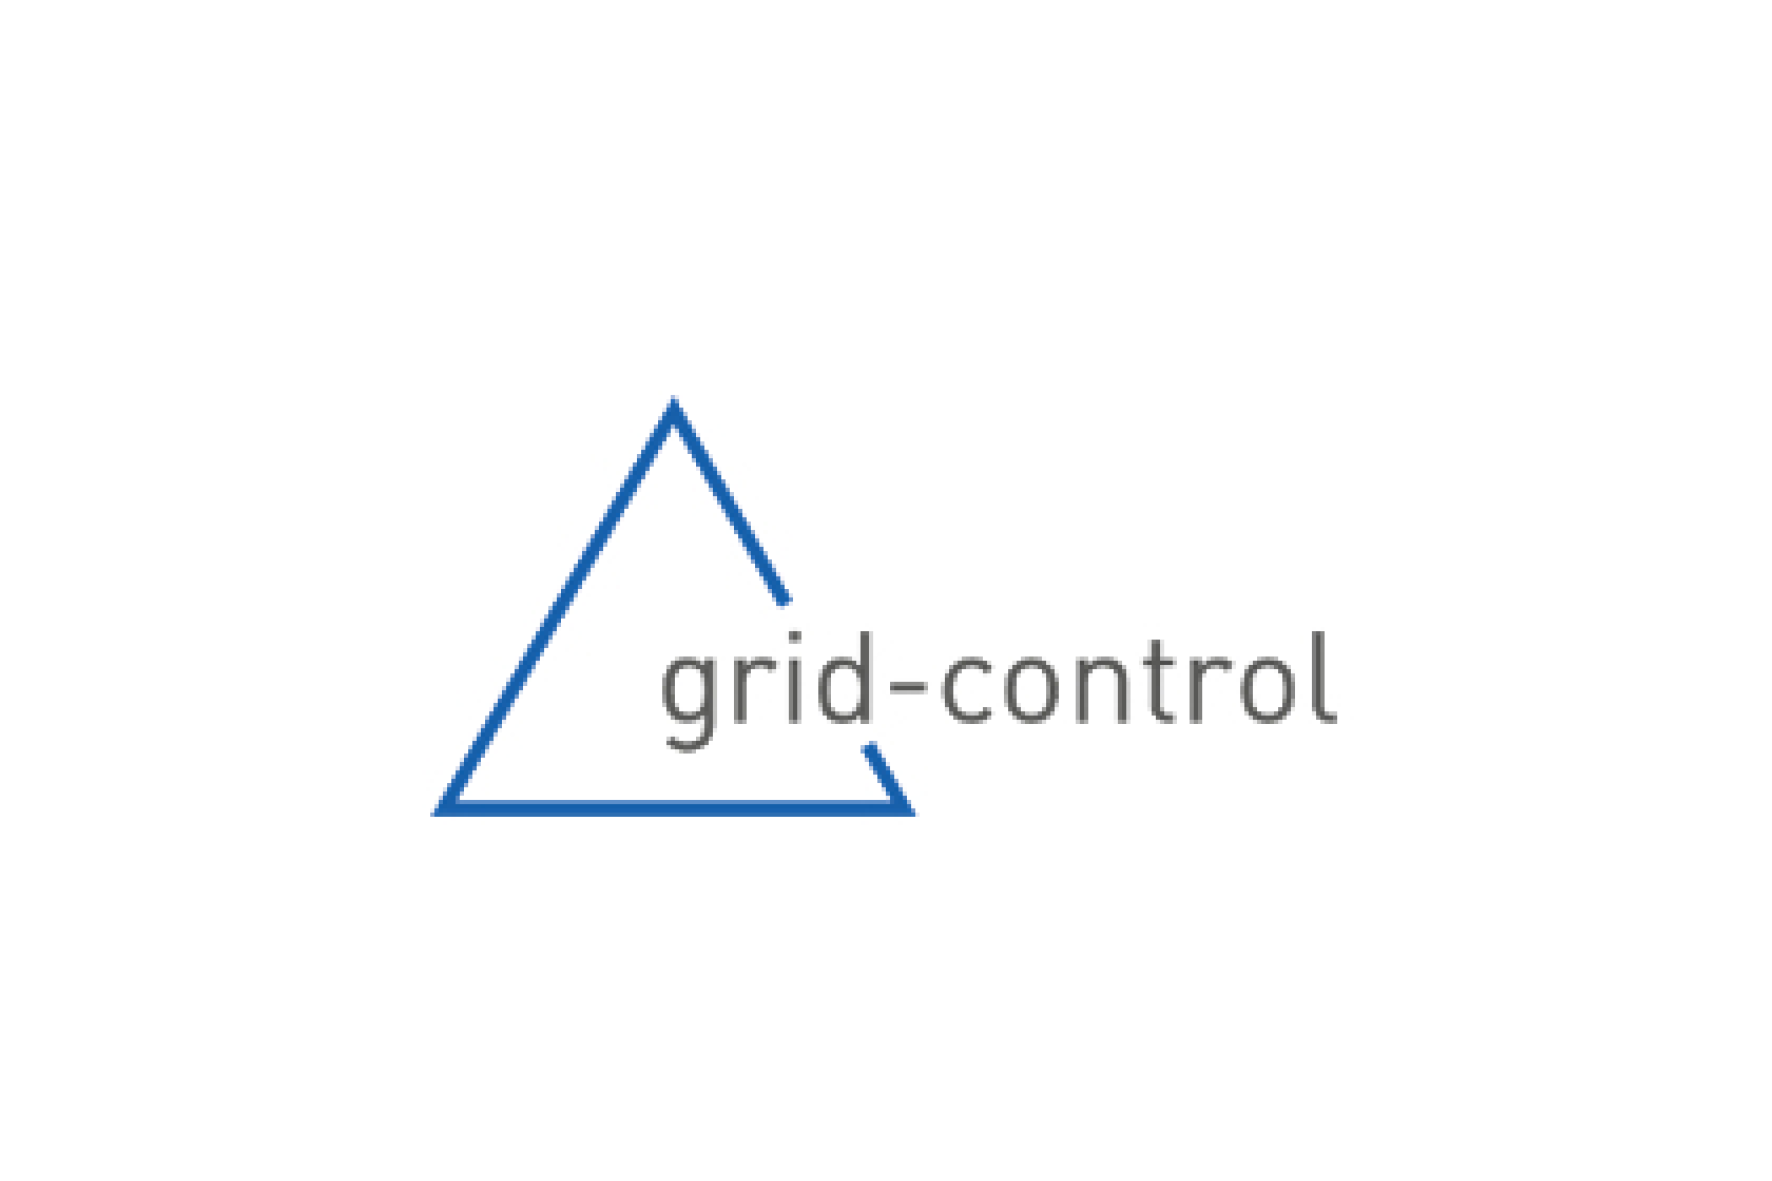 m2g - grid-control